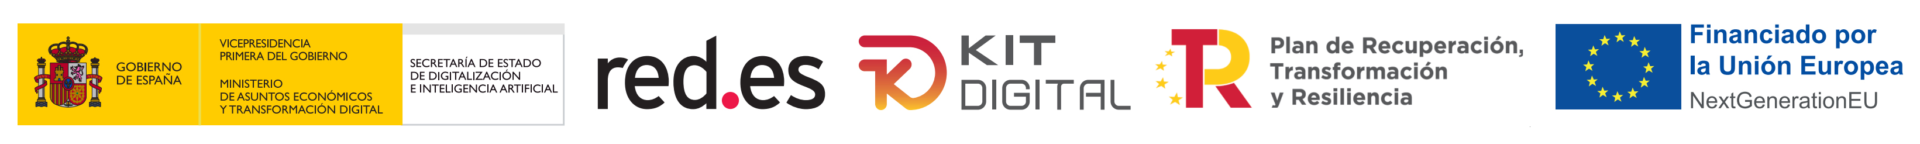 Publicidad de la cofinanciación de la ayuda KIT DIGITAL